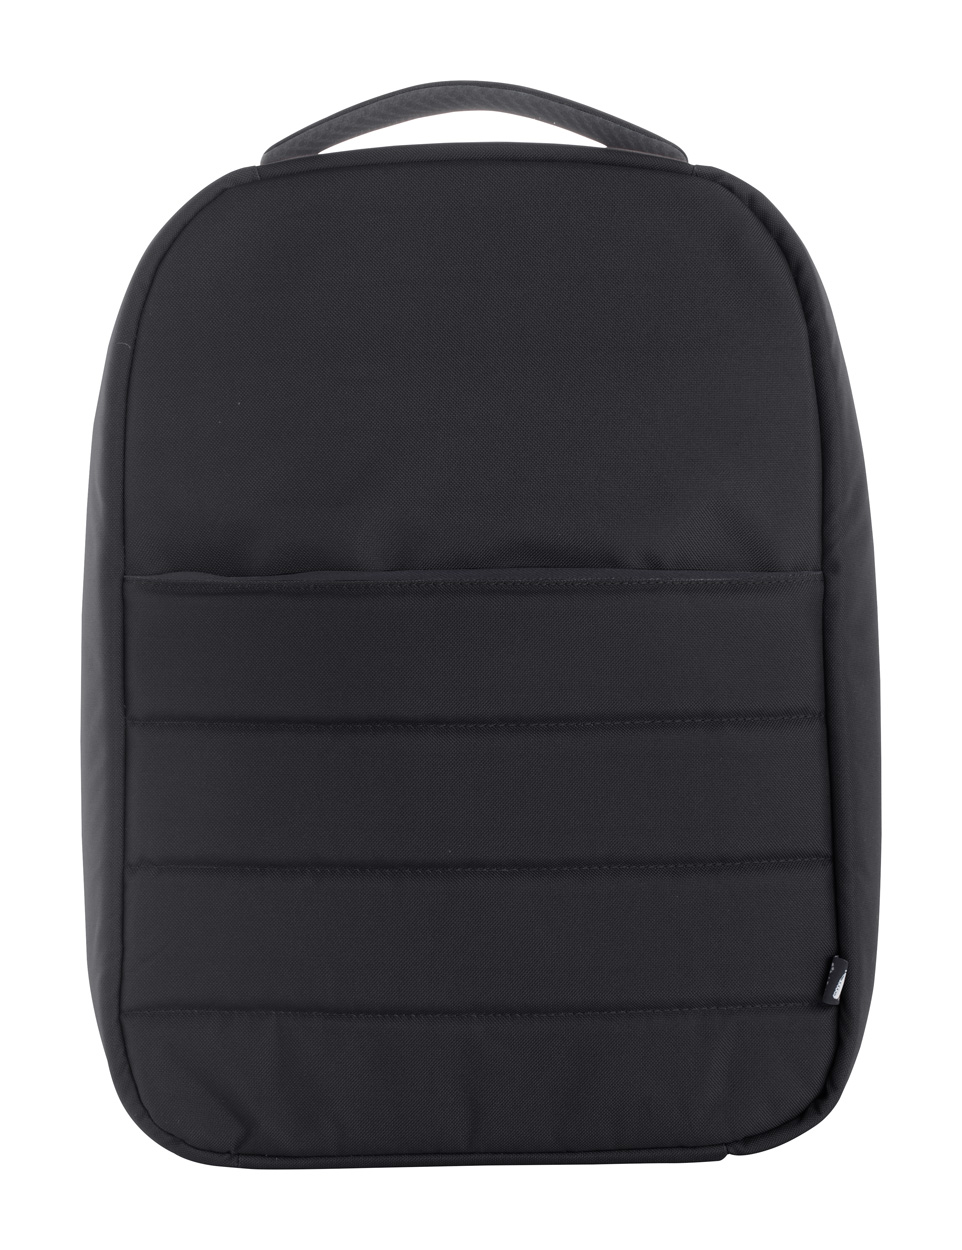 Danium RPET backpack - black